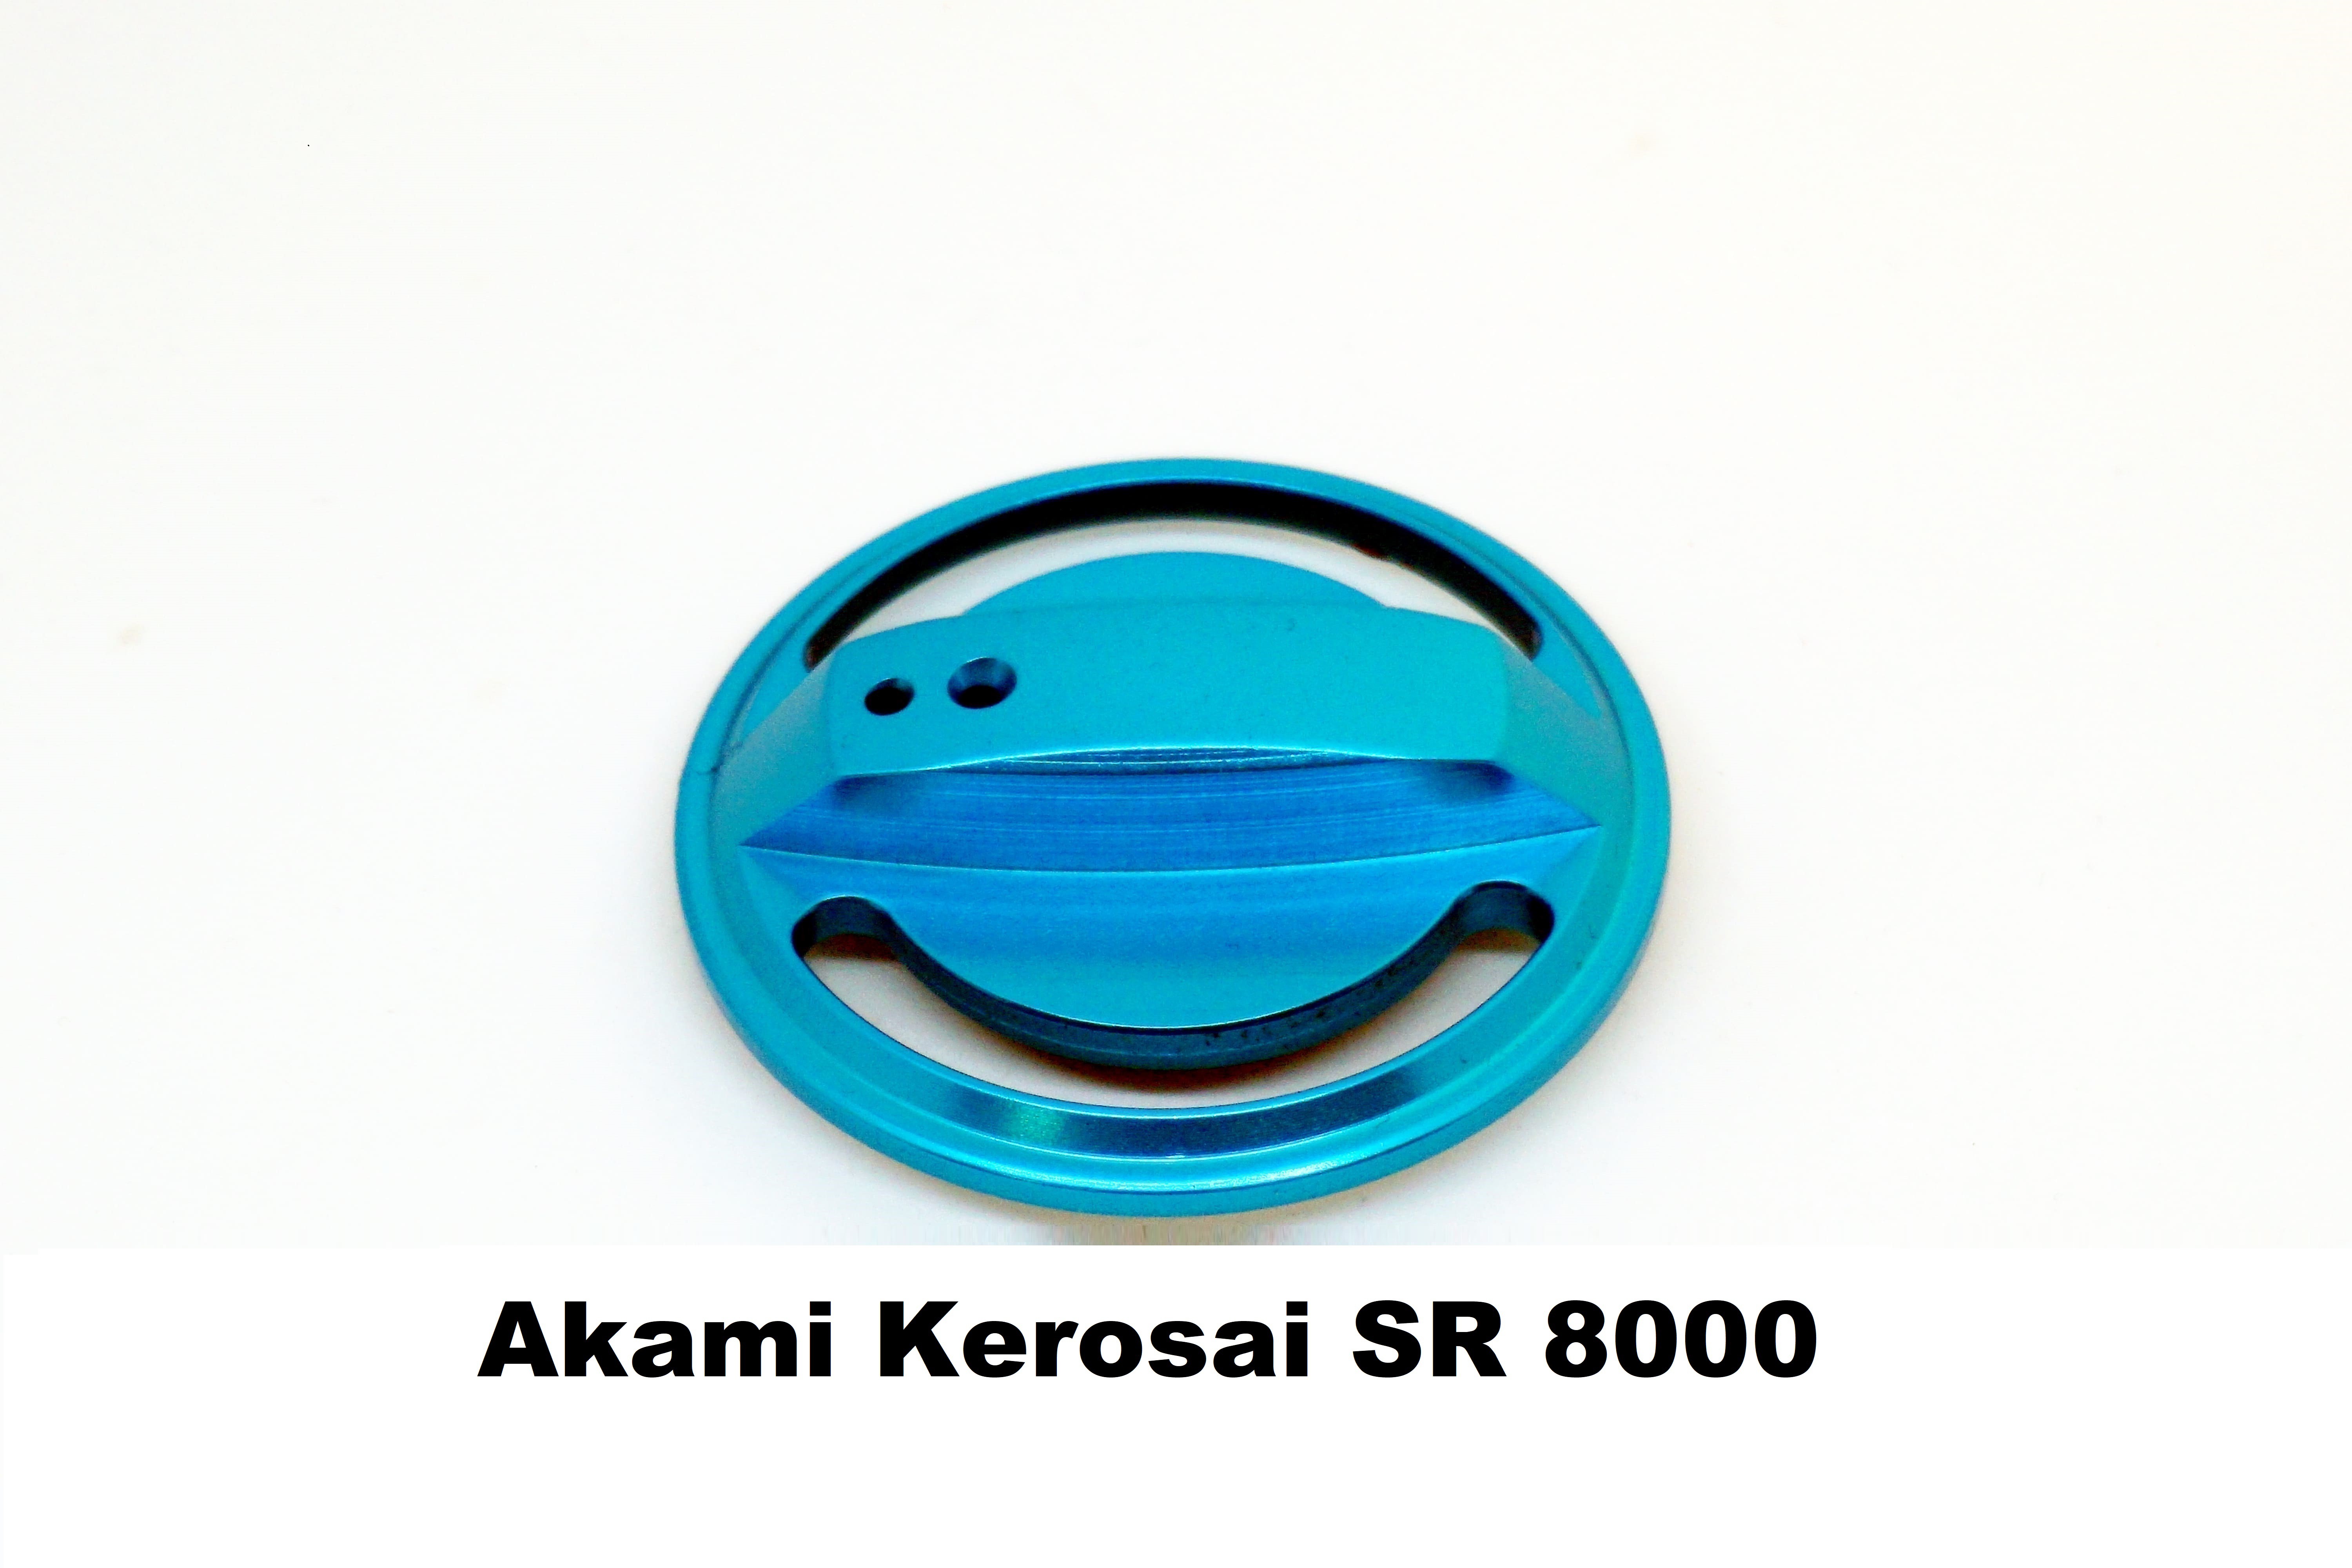 Tapón de Freno Akami Kerosai SR 8000